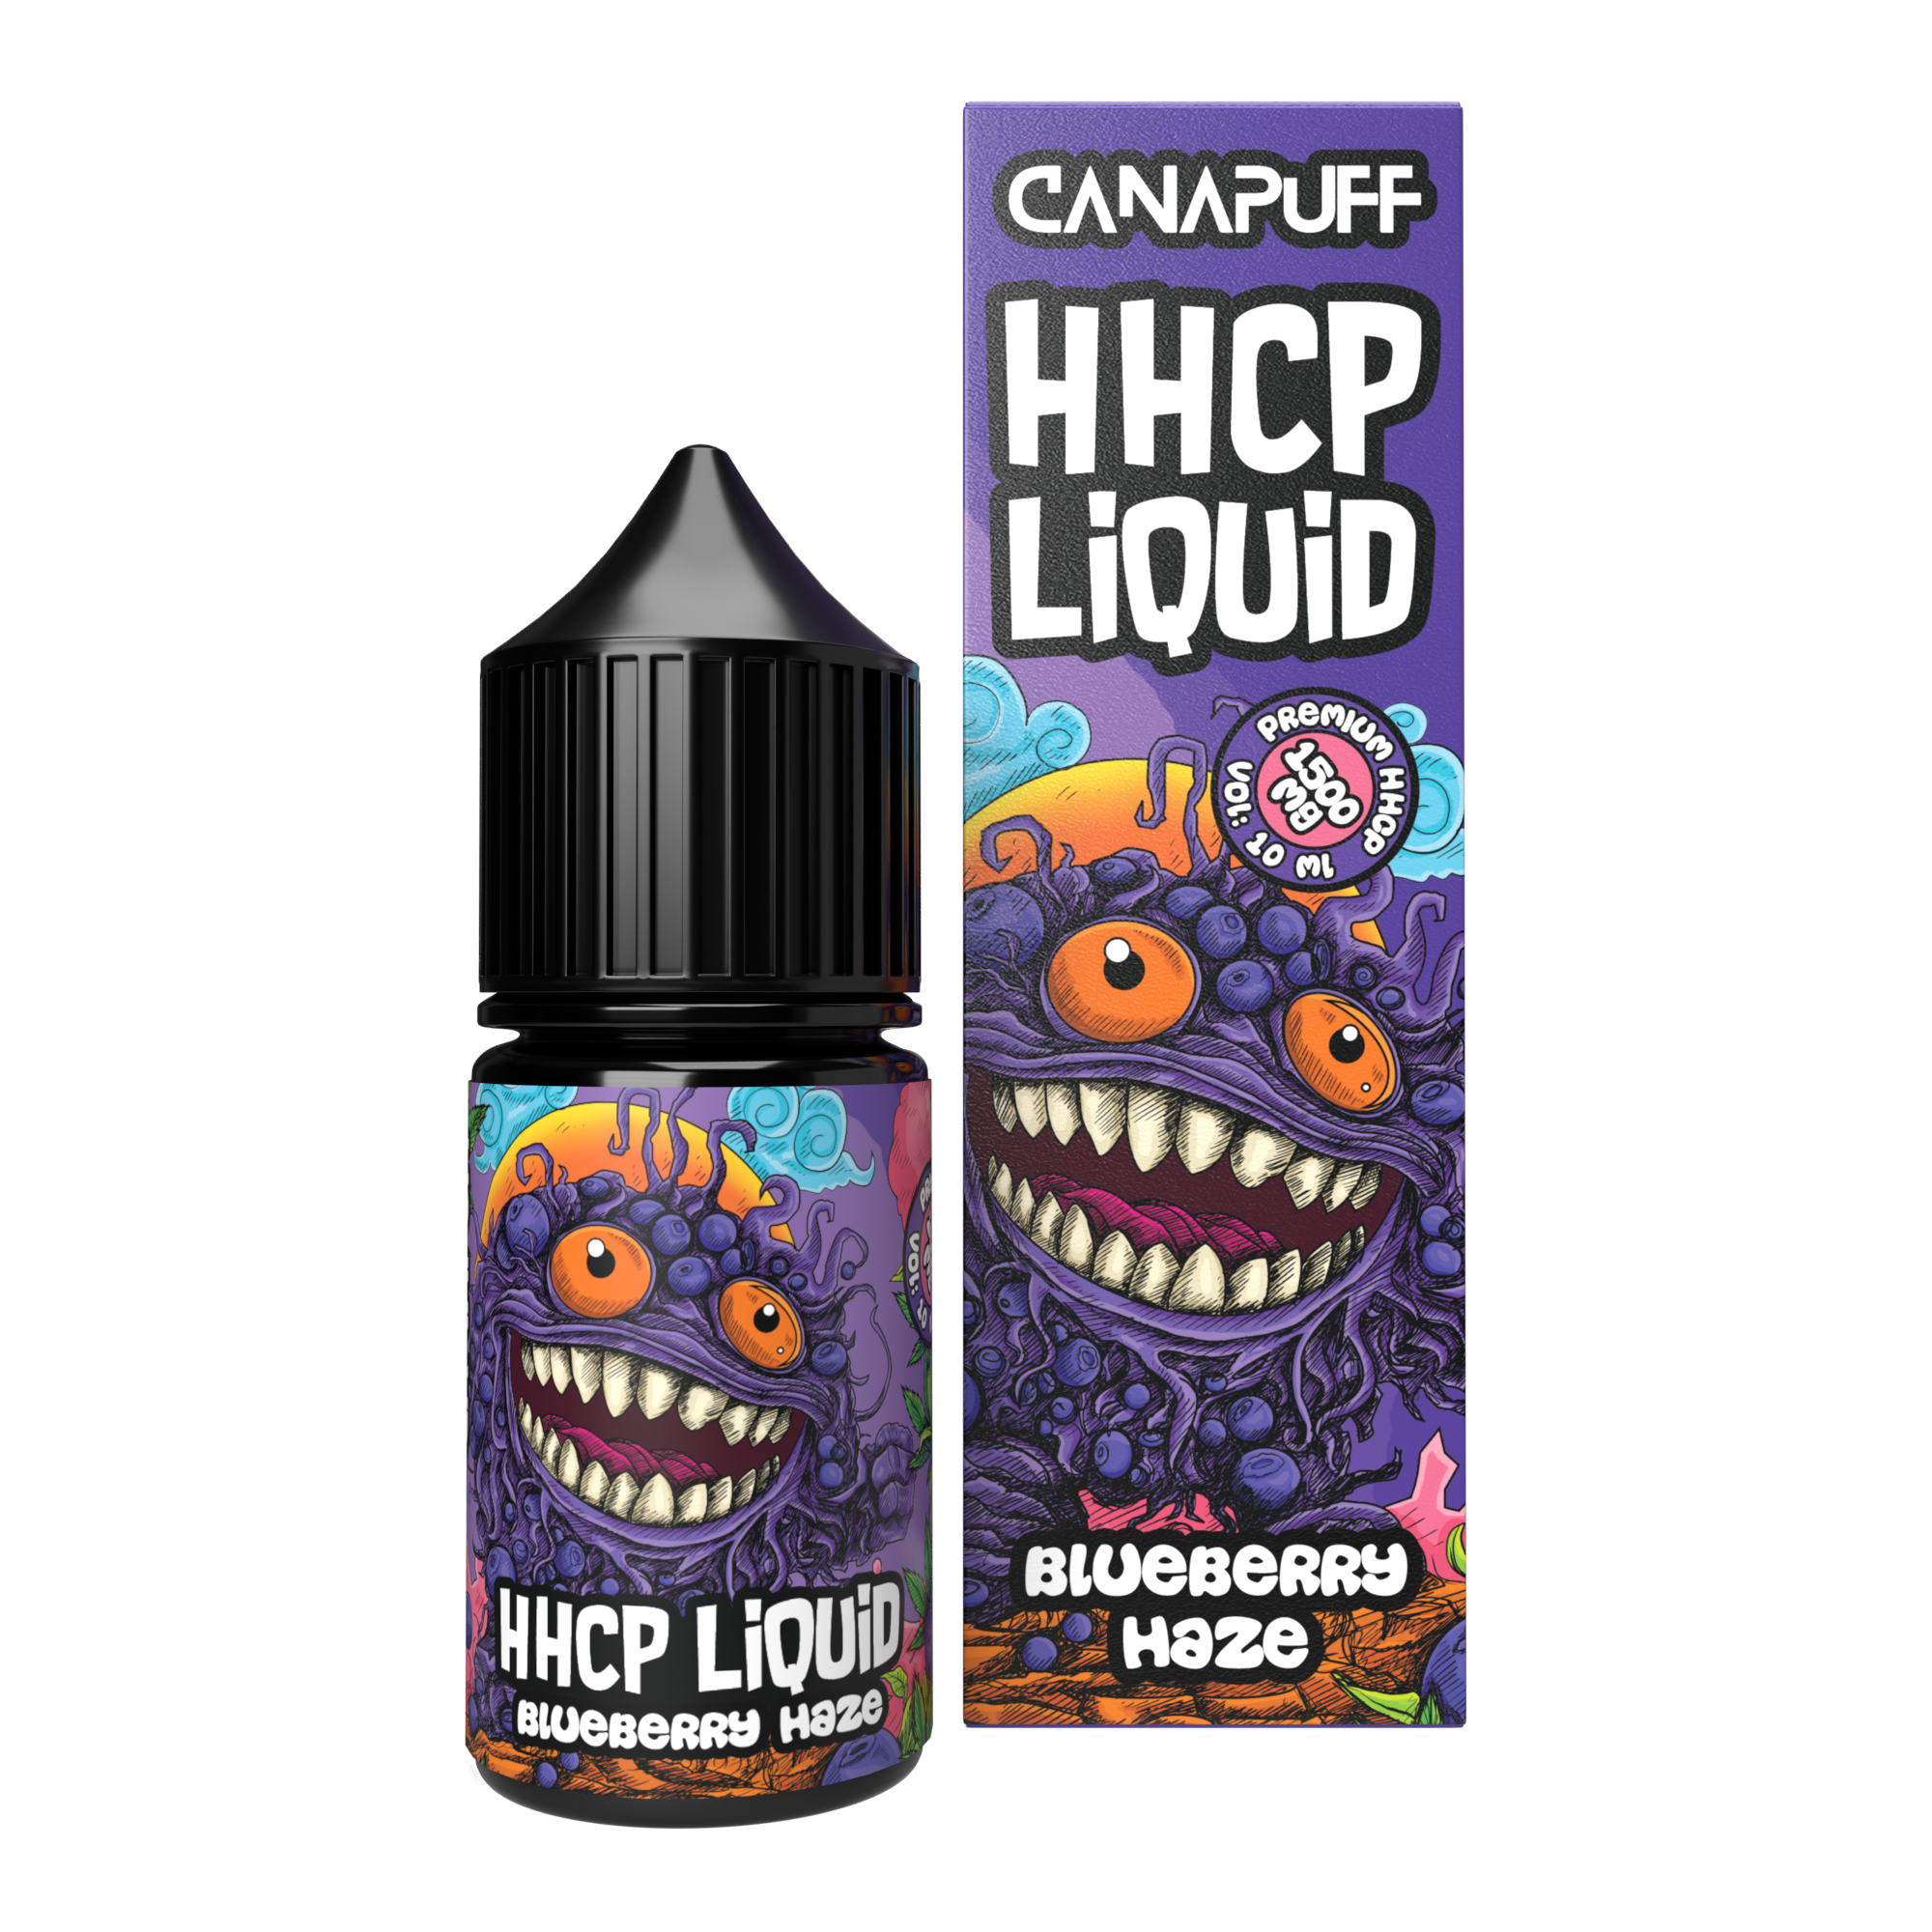 HHC-P liquide 1.500mg - Blueberry Haze